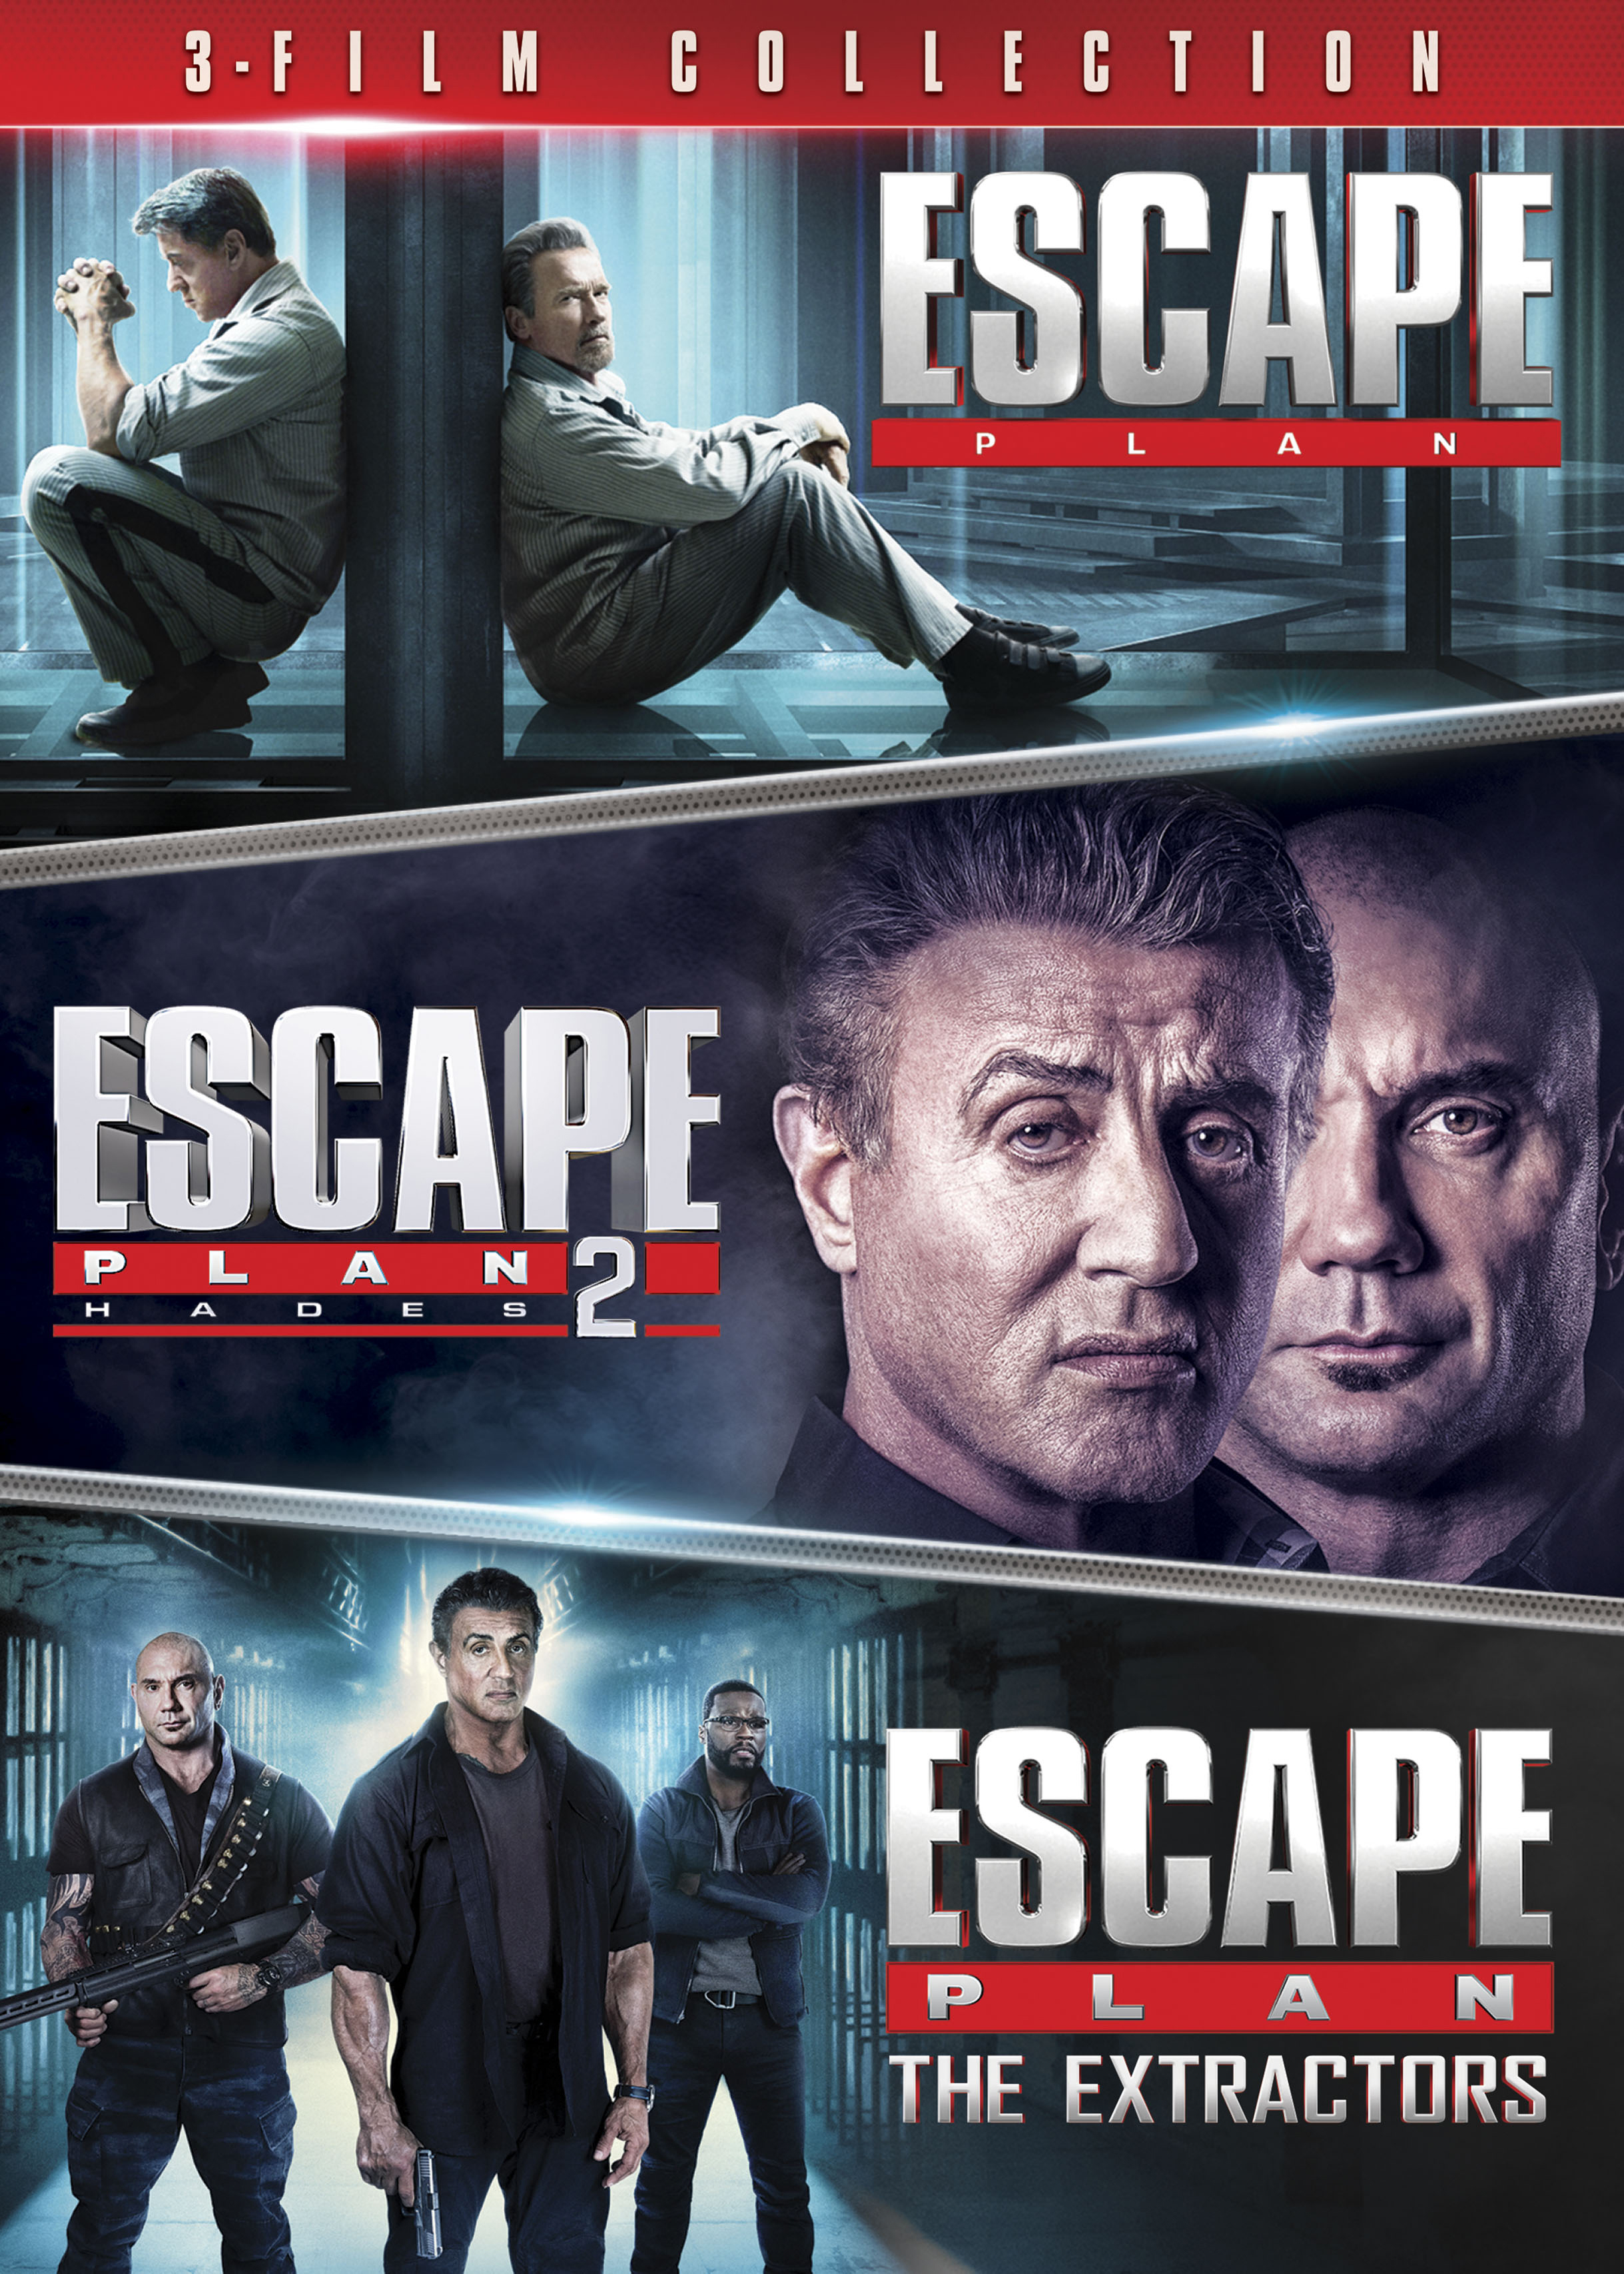 Apt Desillusie als resultaat Escape Plan: 3-Film Collection [DVD] - Best Buy